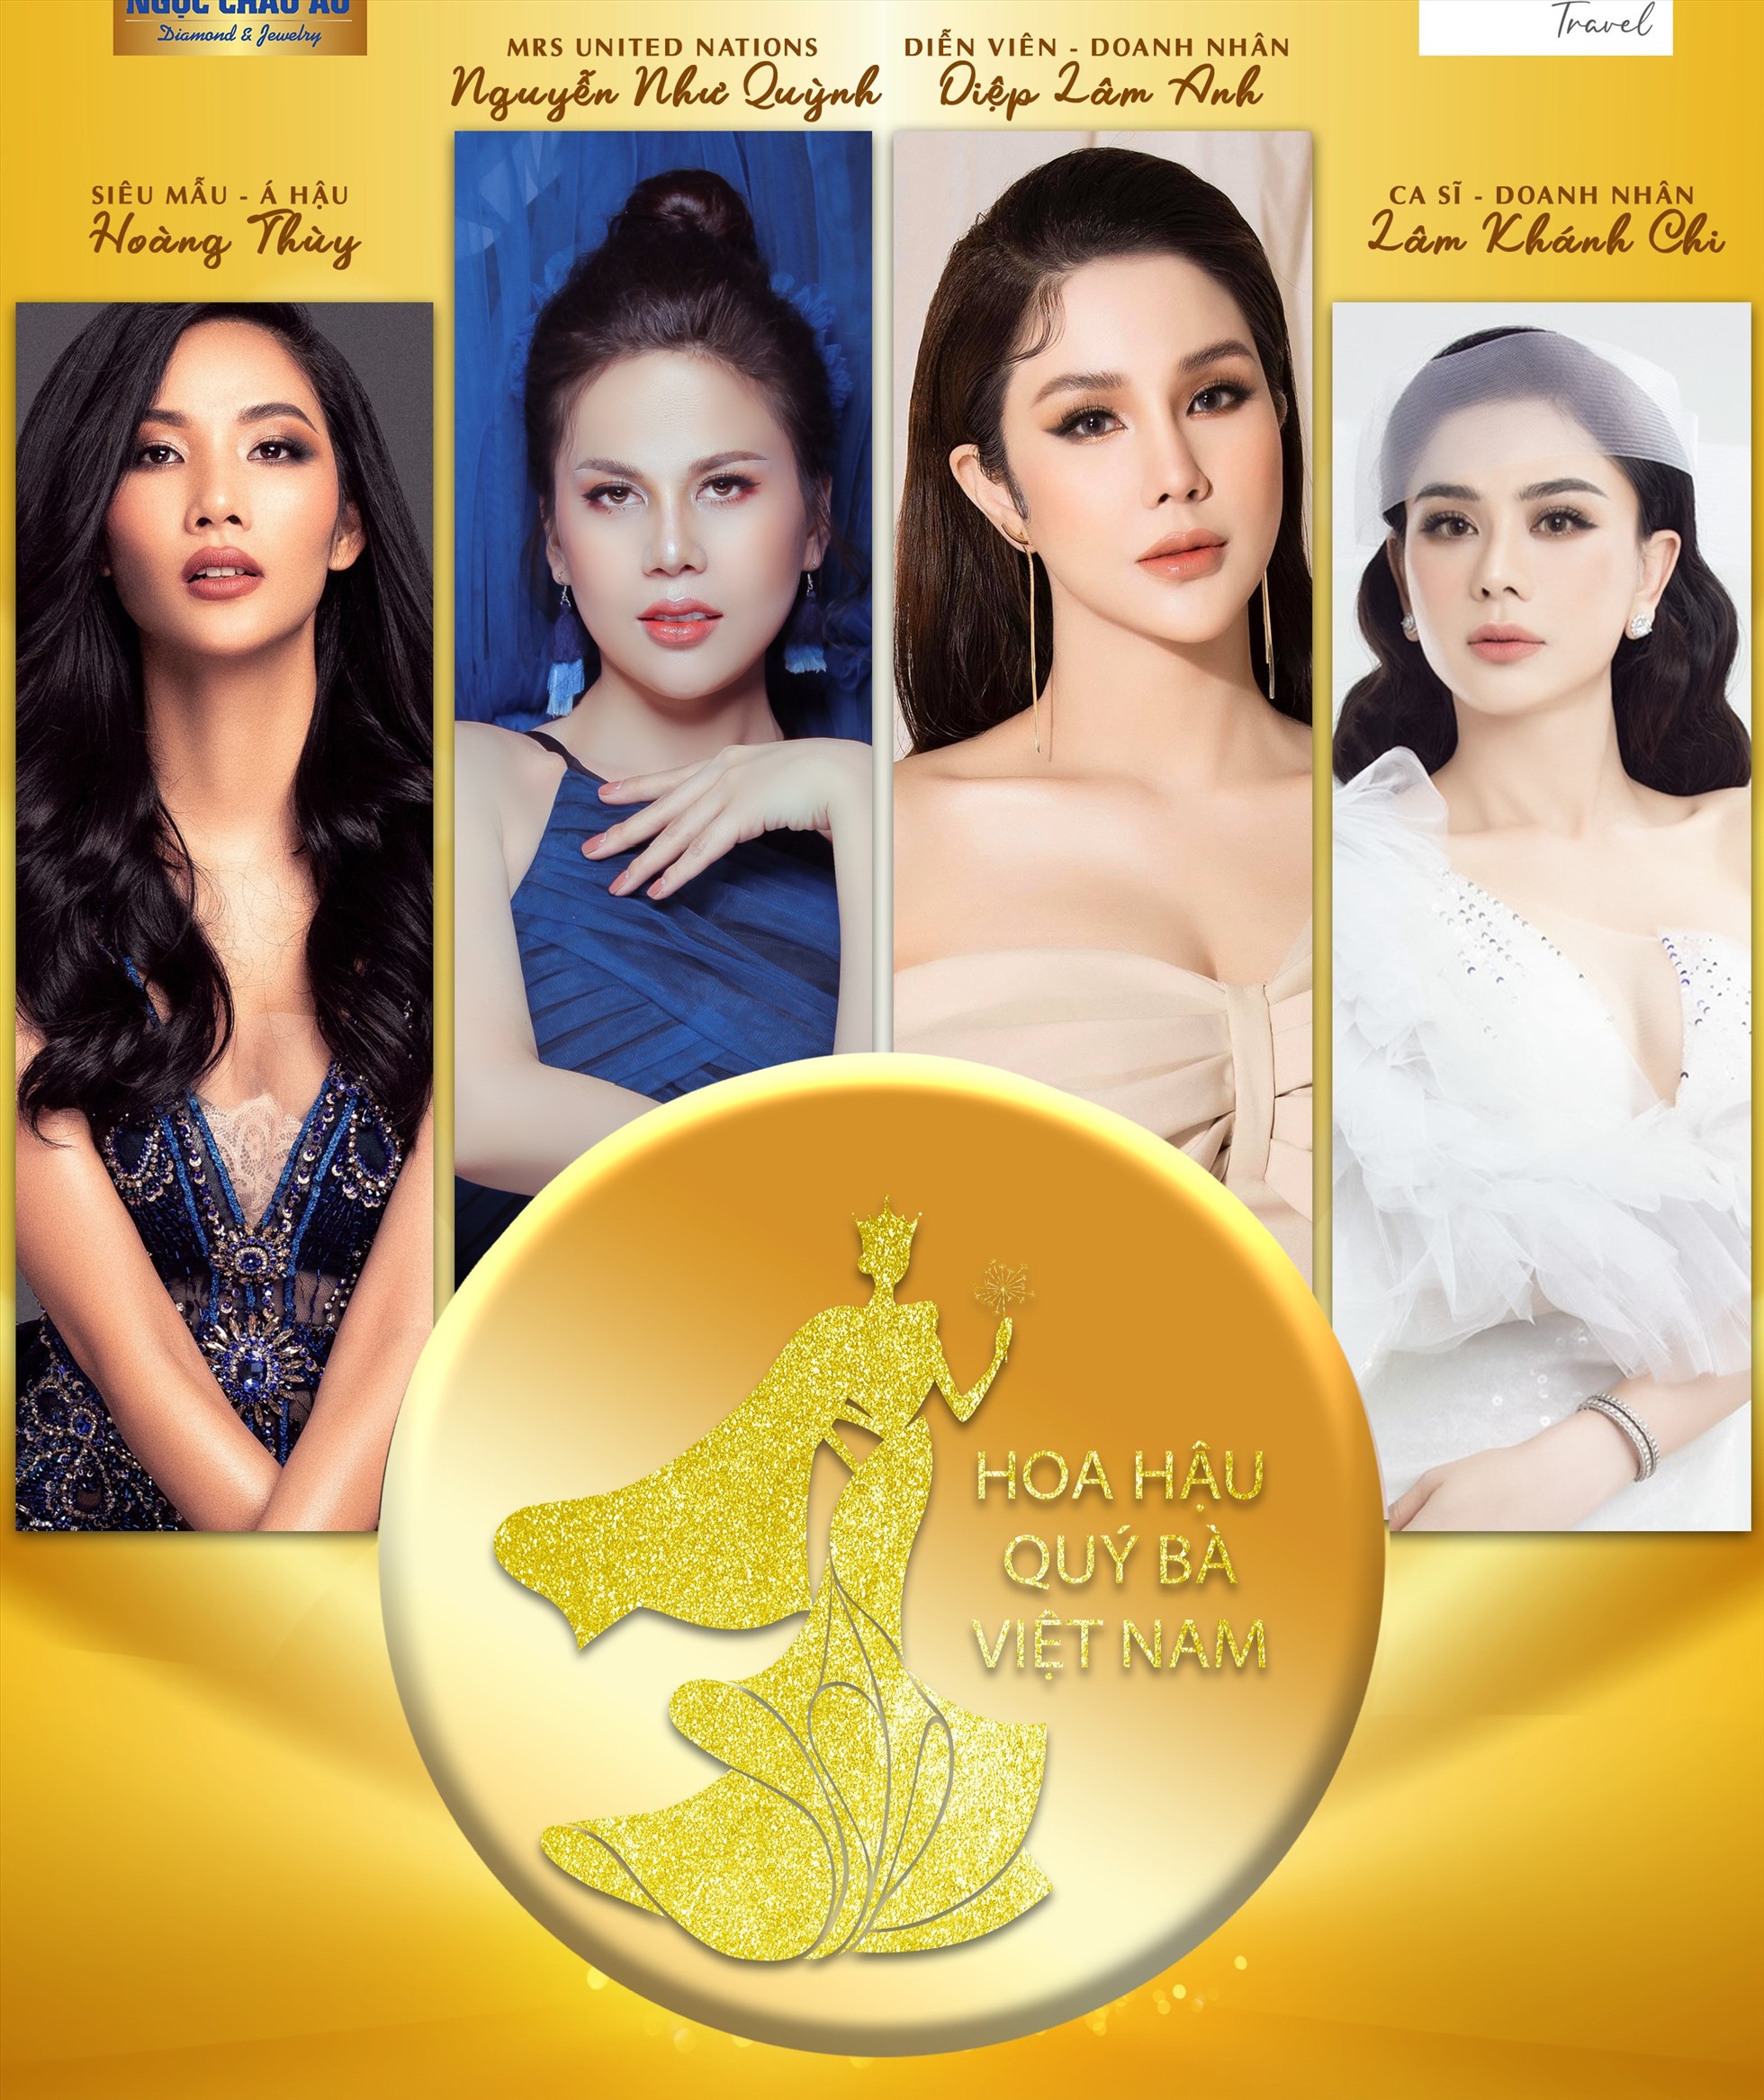 Ban Giám khảo cuộc thi “Hoa hậu Quý bà Việt Nam 2022“. Ảnh: BTC.